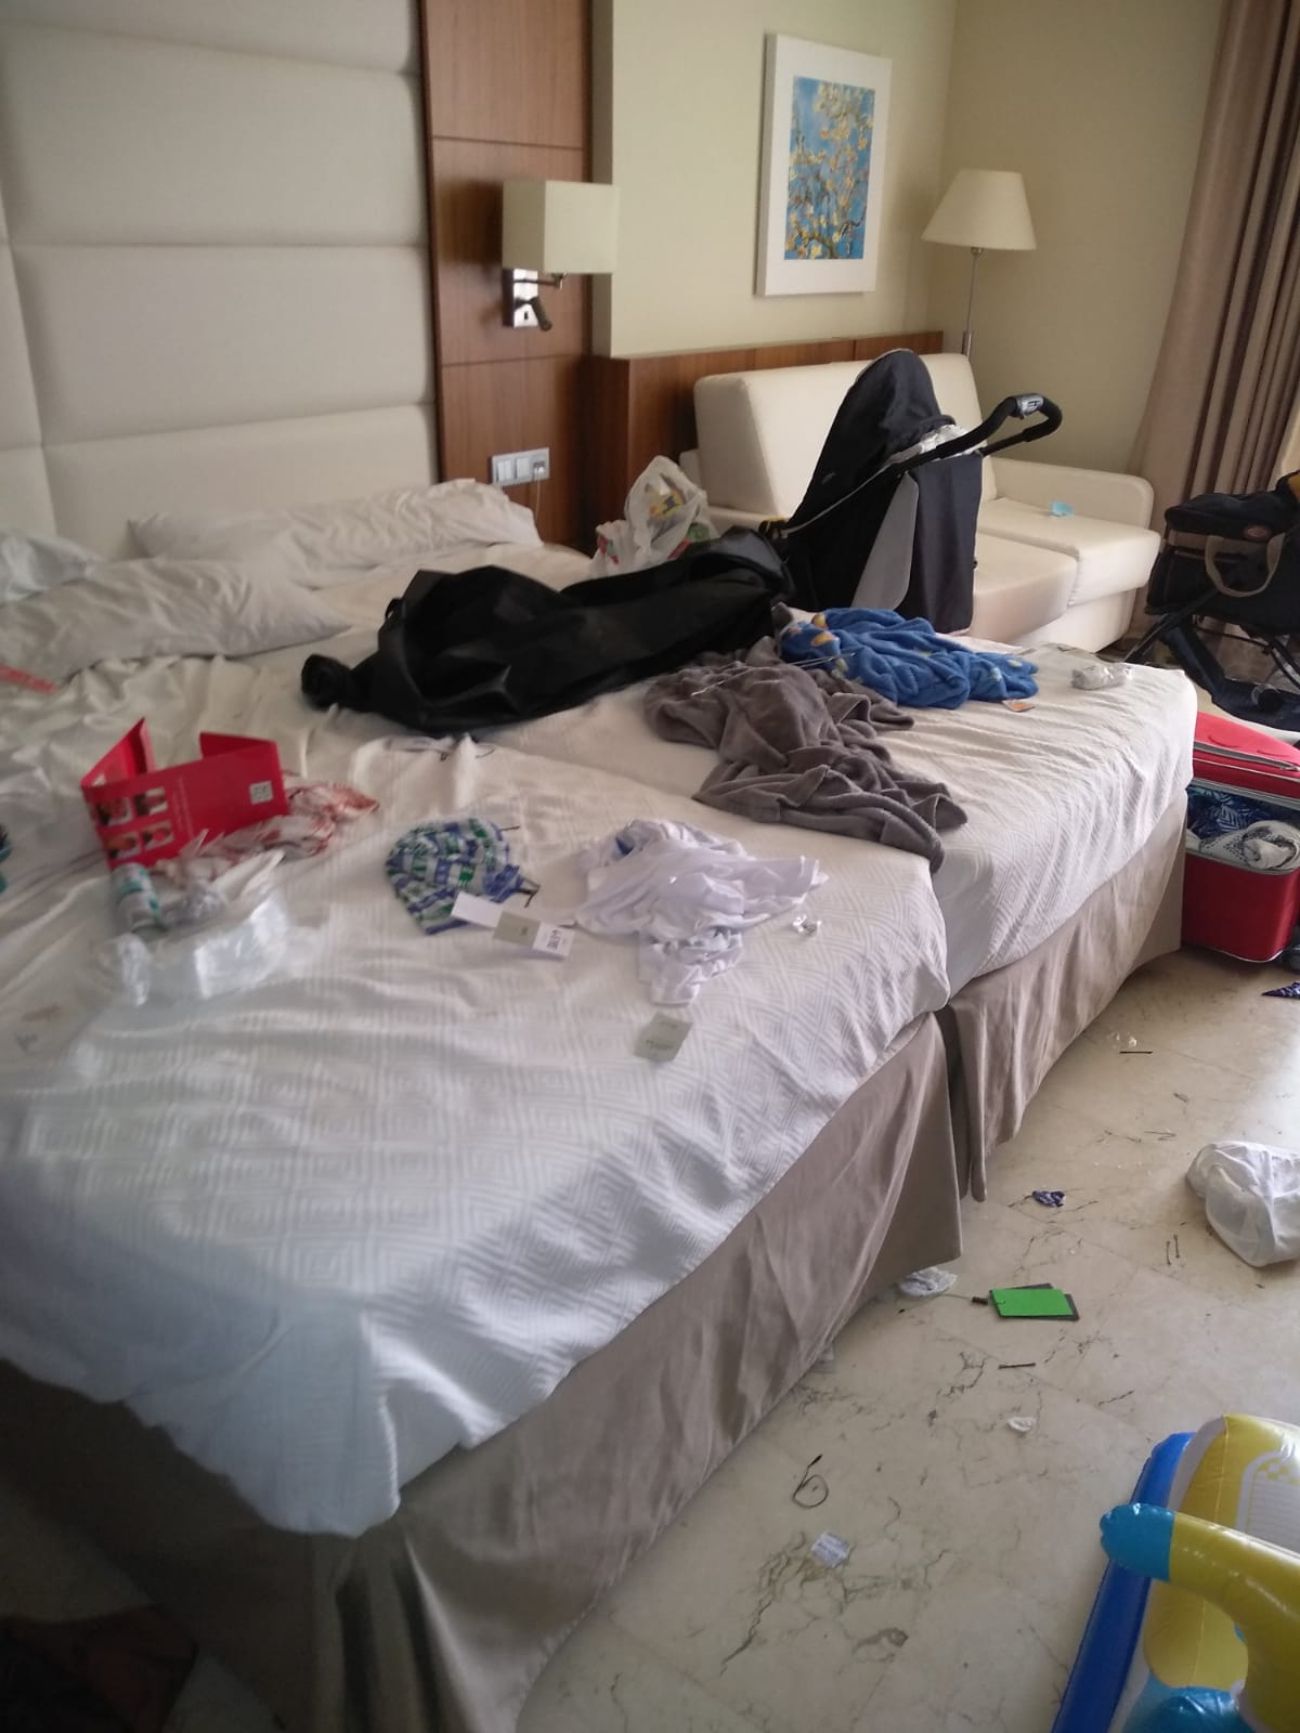 La Kellys de Benidorm denuncian el vergonzoso estado en el que dejan las habitaciones los clientes